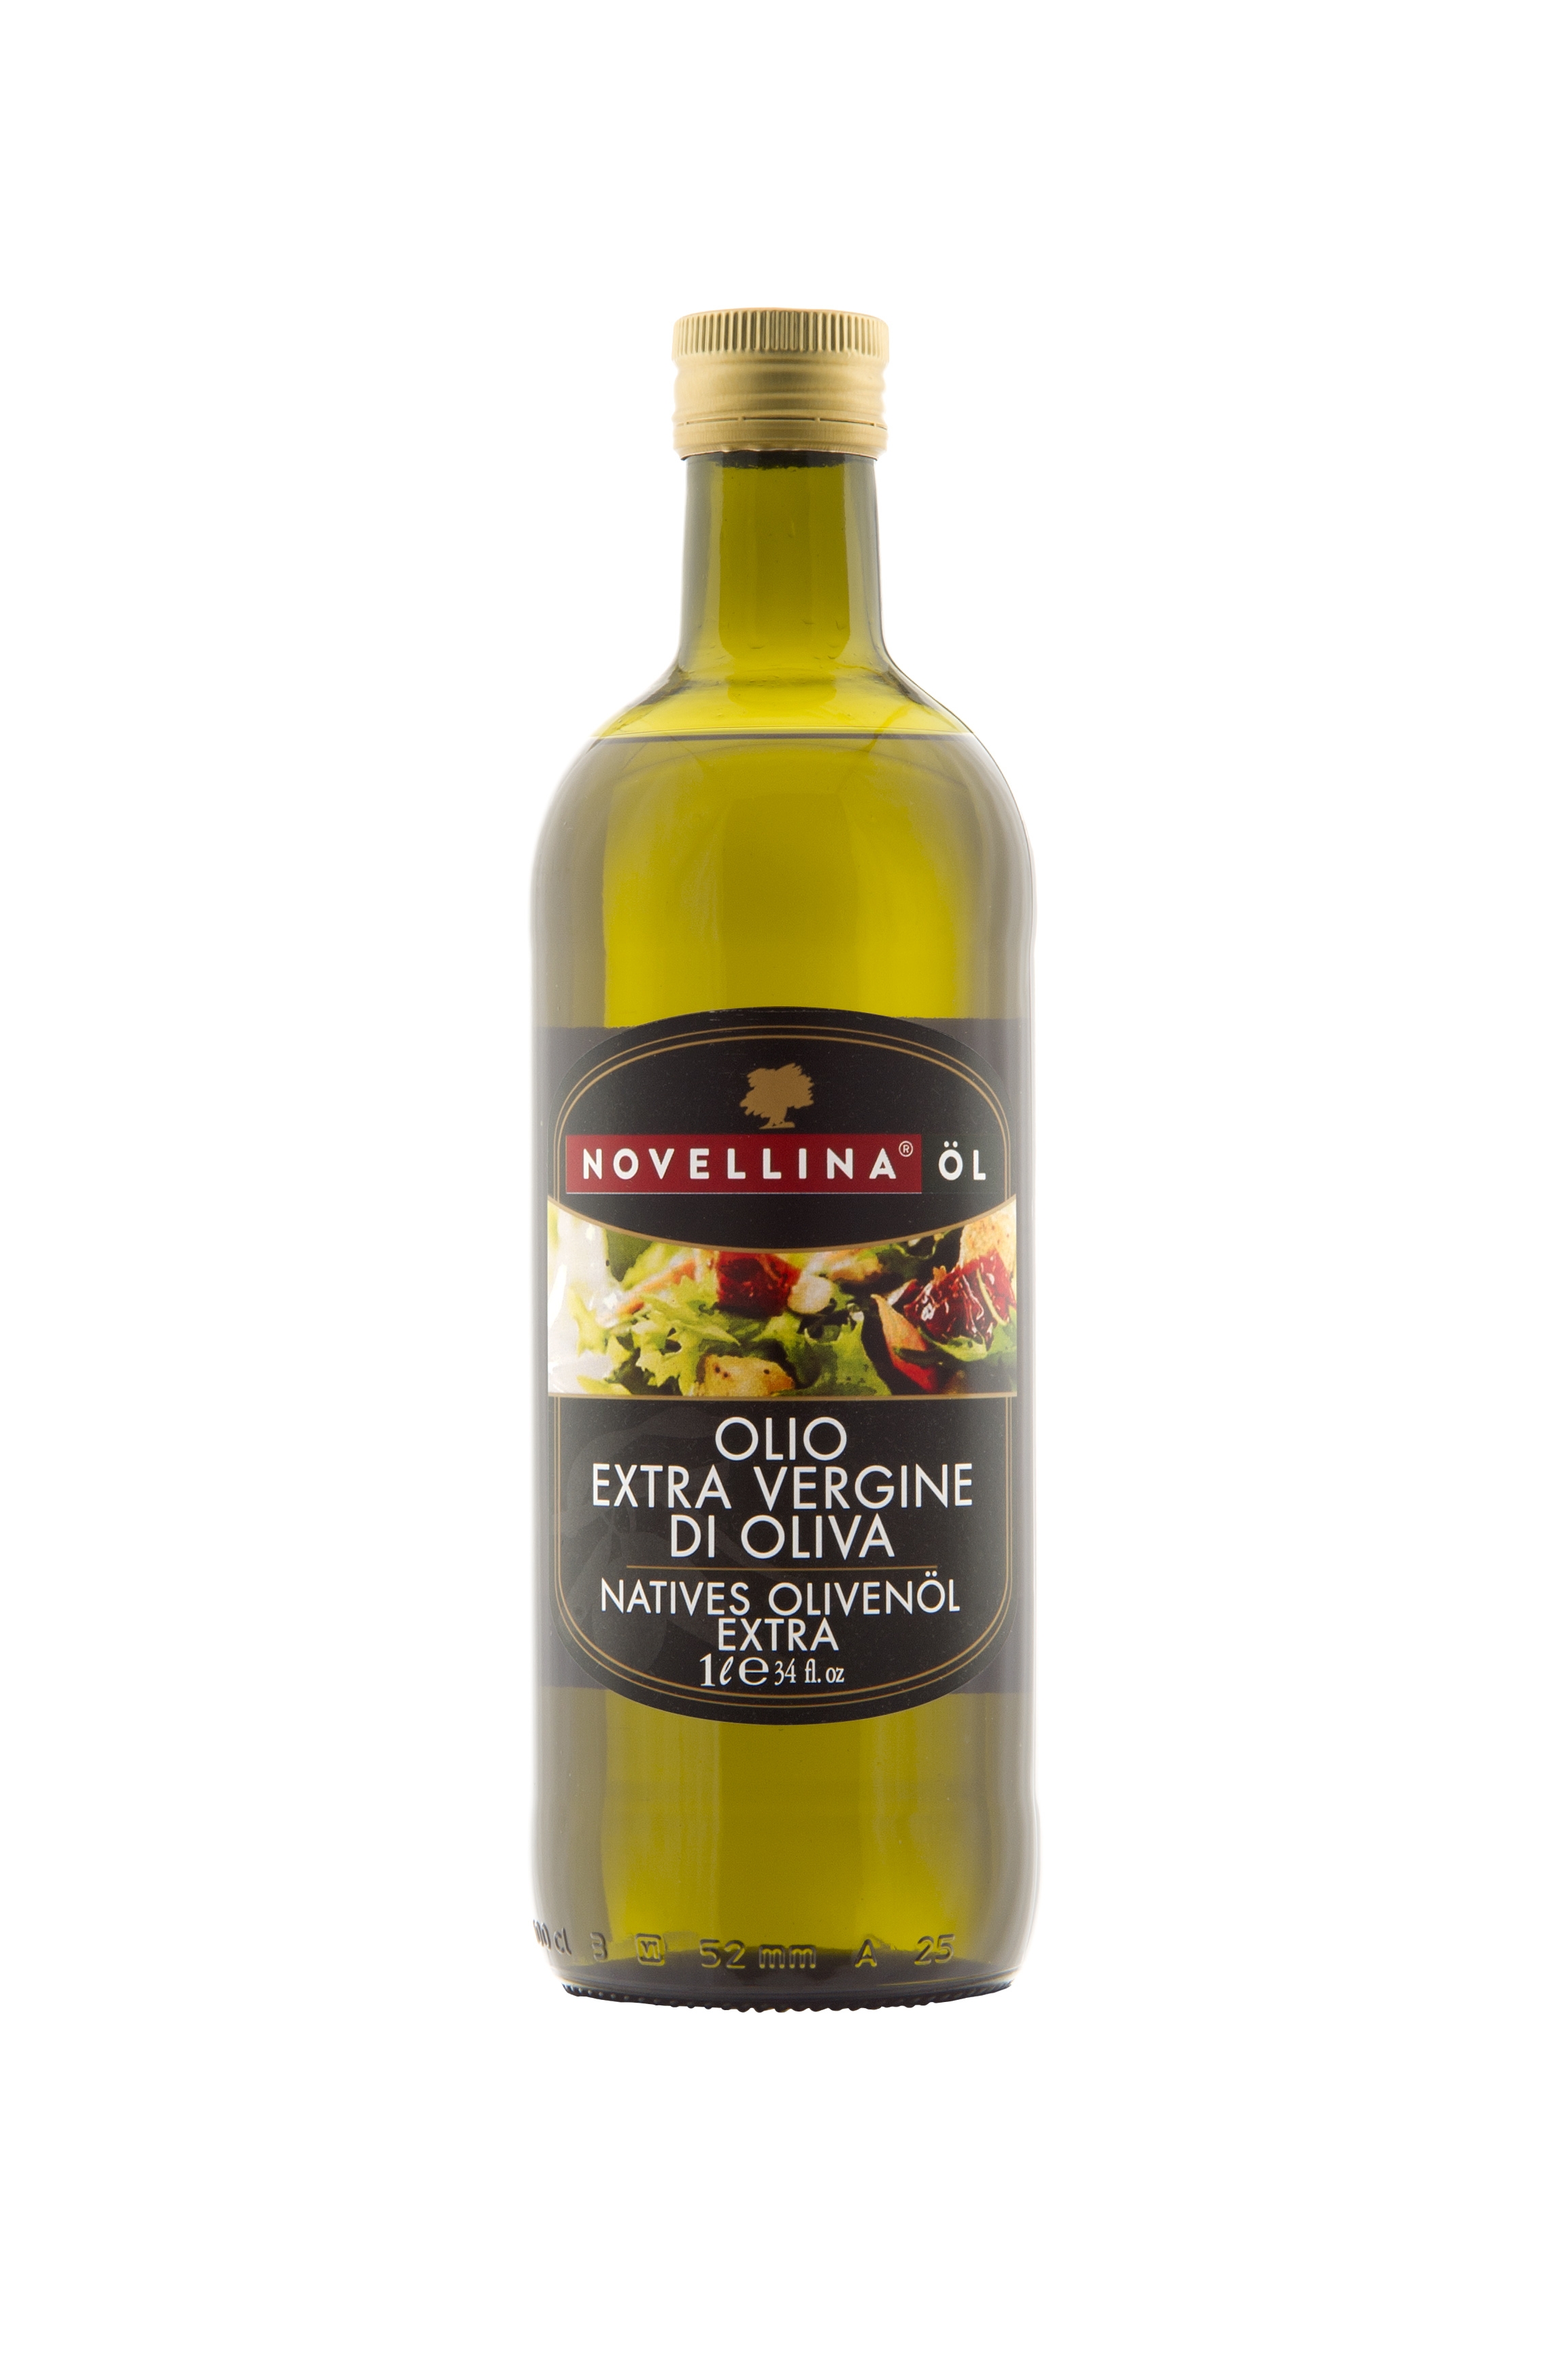 Novellina Öl - Natives Ölivenöl Extra 1l 